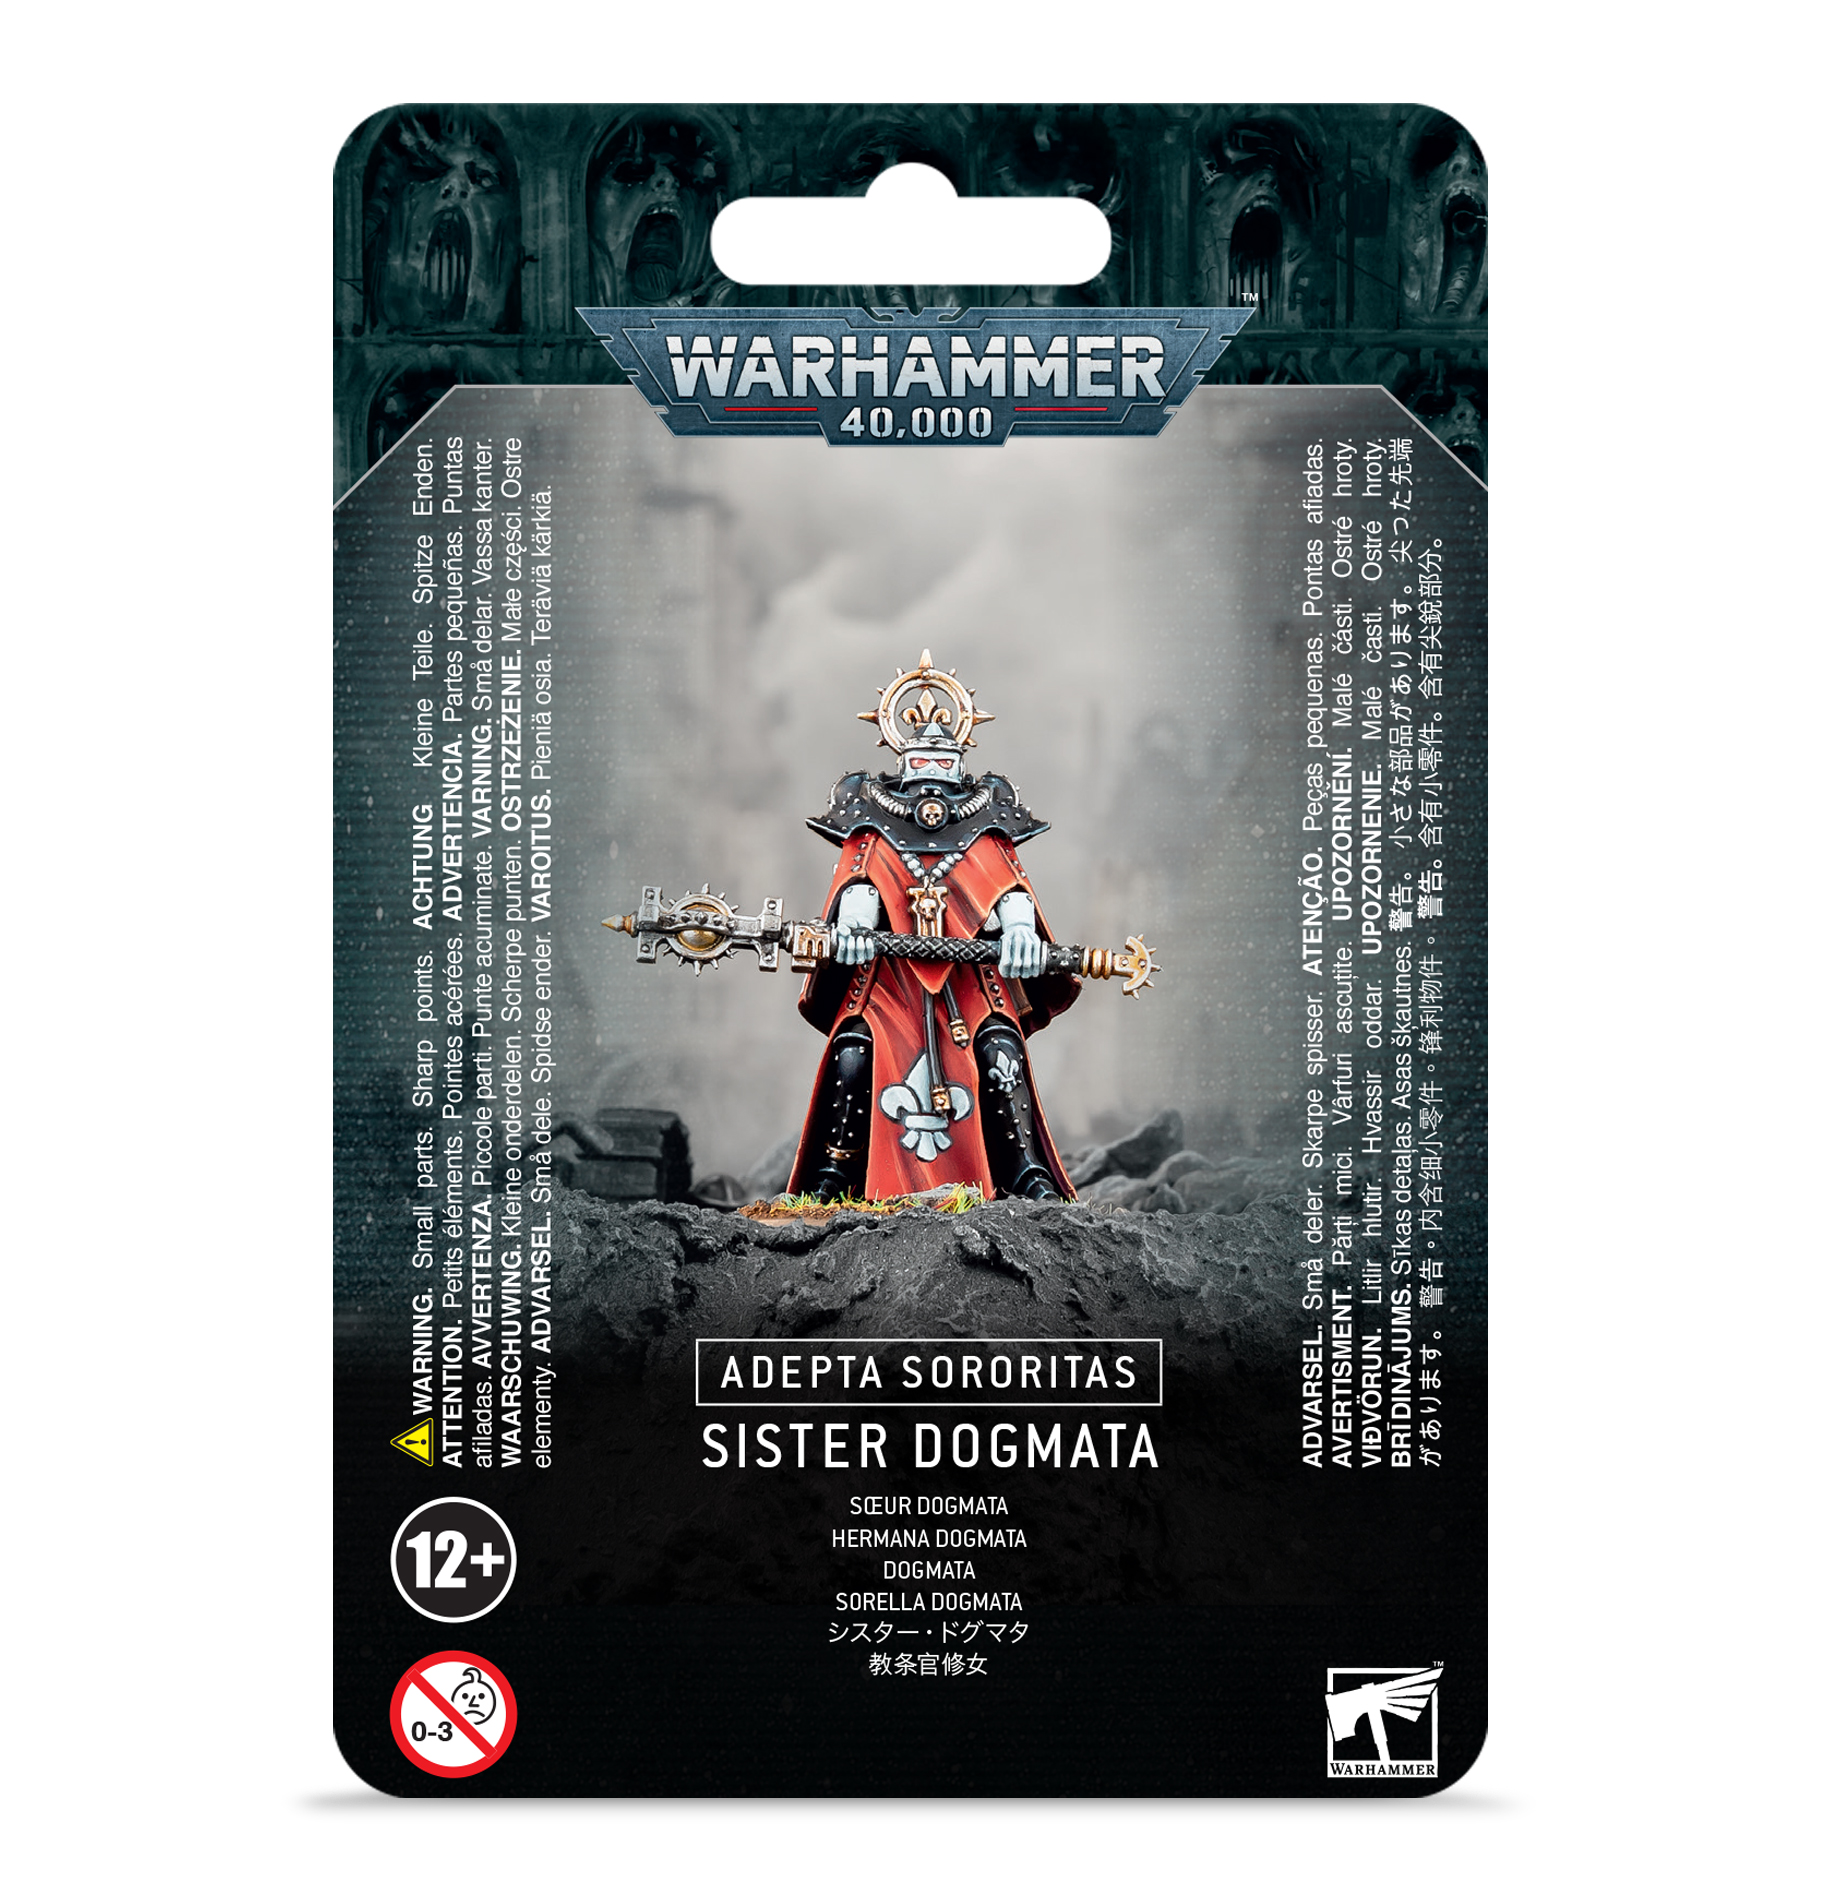 Sister Dogmata - 52-32 - Adepta Sororitas - Warhammer 40.000